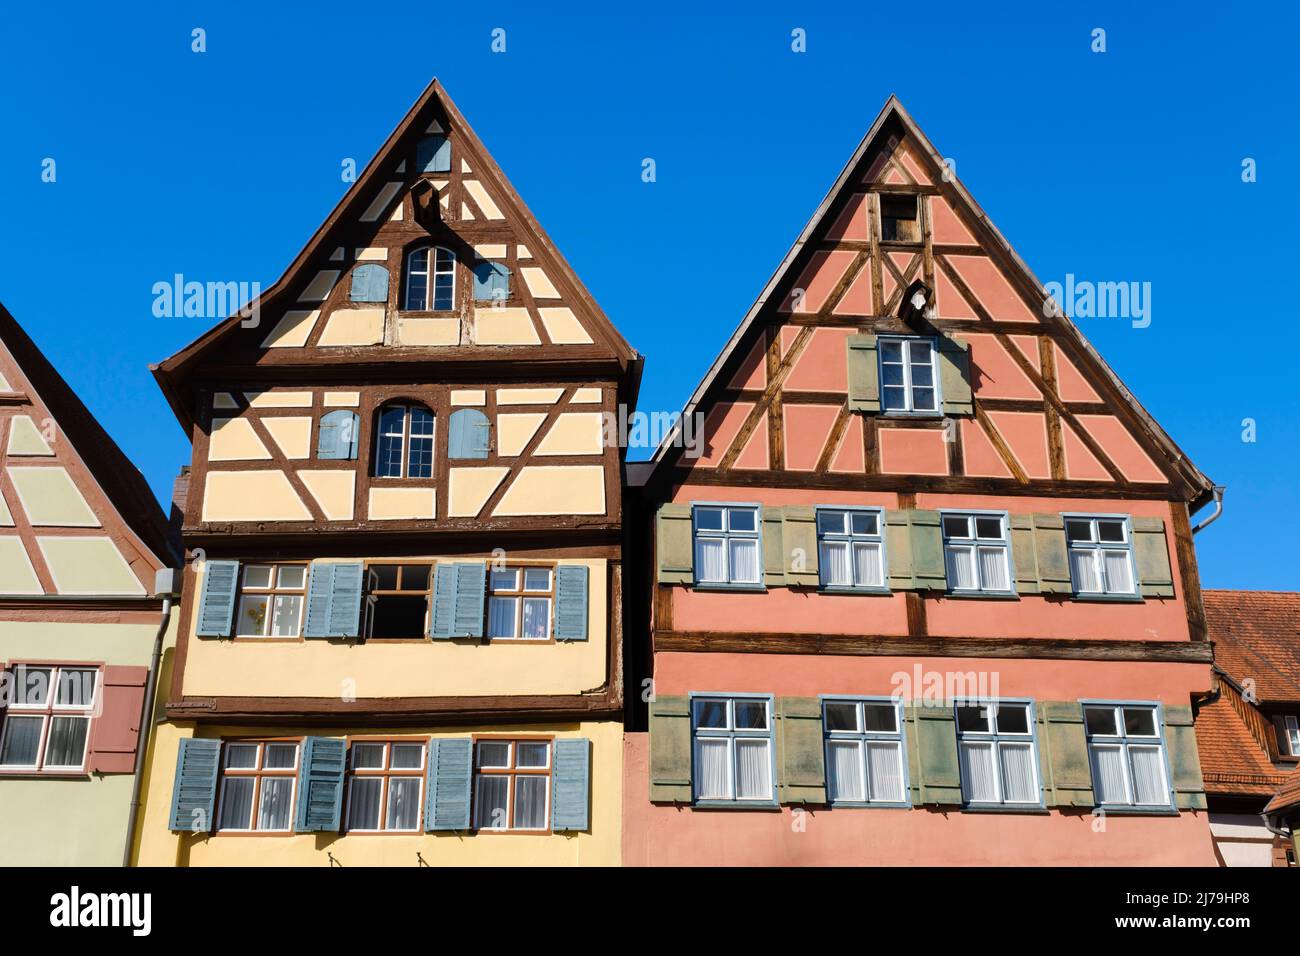 Maison à colombages dans la vieille ville de Dinkelsbühl Banque D'Images